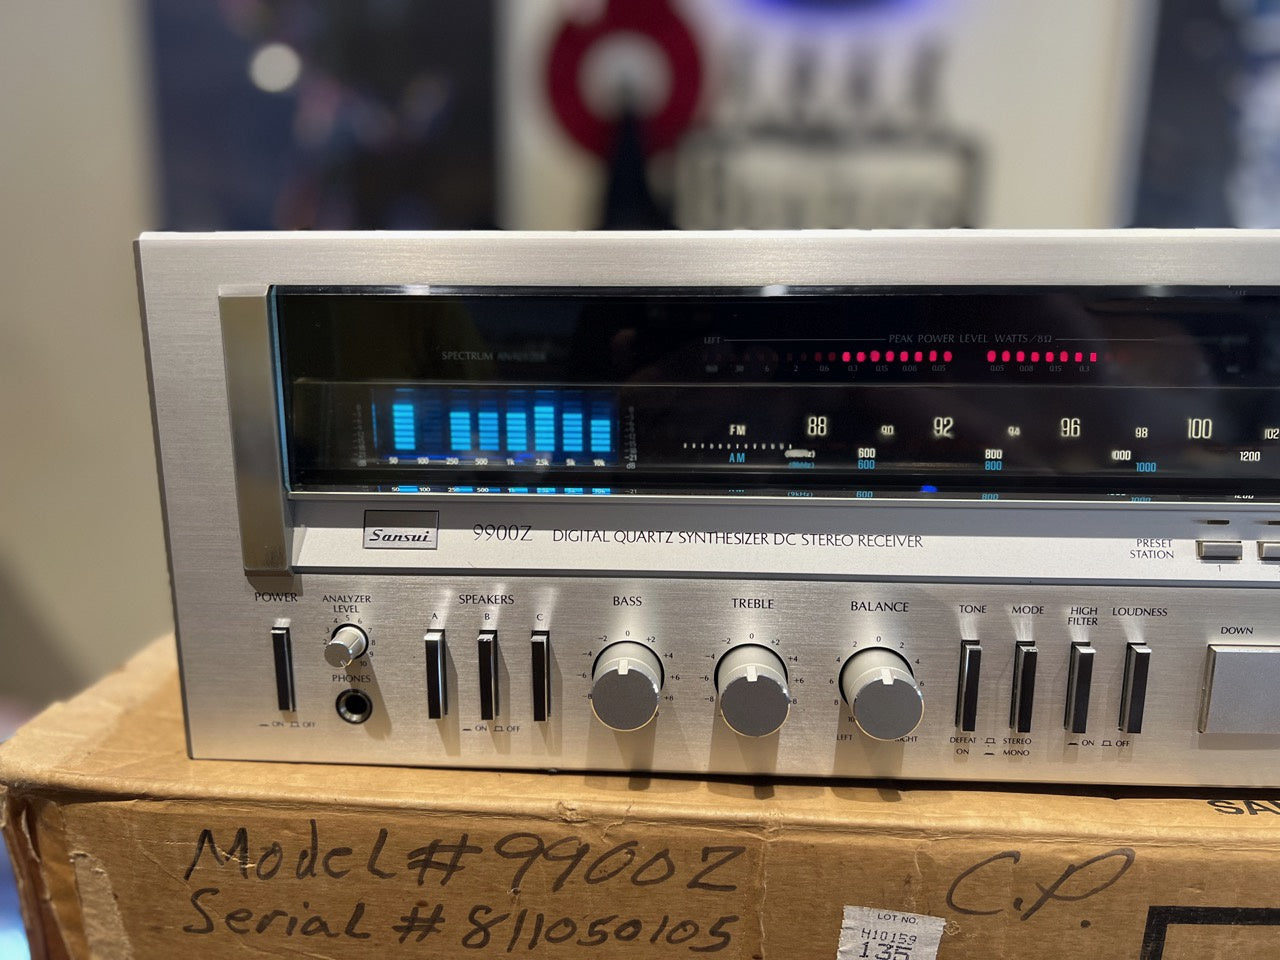 SALE * Sansui 9900Z Stereo Receiver * 160W RMS * 1981 * Box